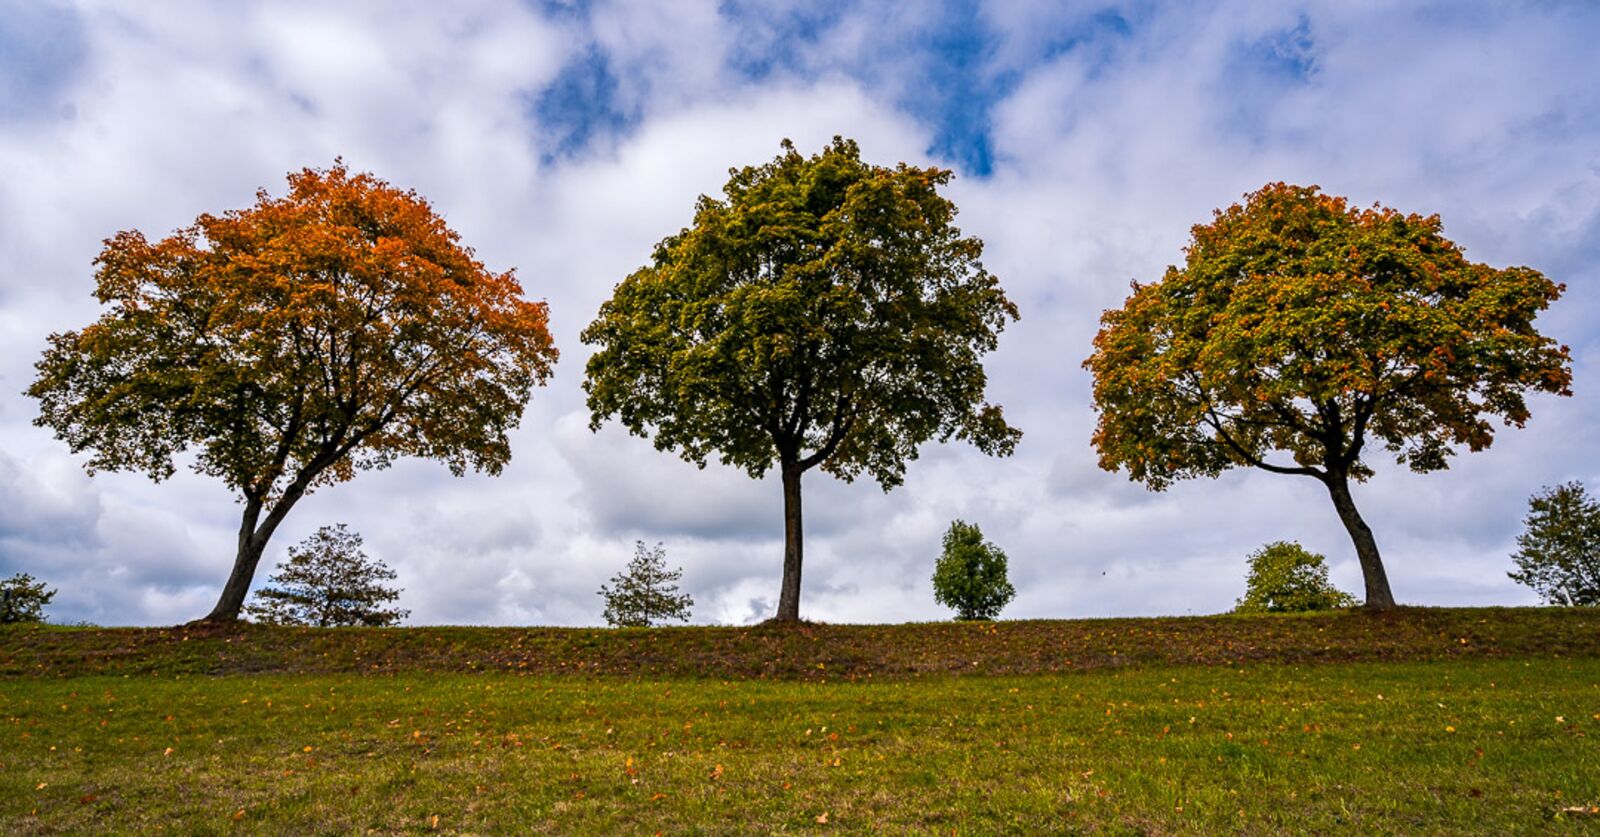 Sony Vario-Tessar T* FE 16-35mm F4 ZA OSS sample photo. Trees, autumn, landscape photography